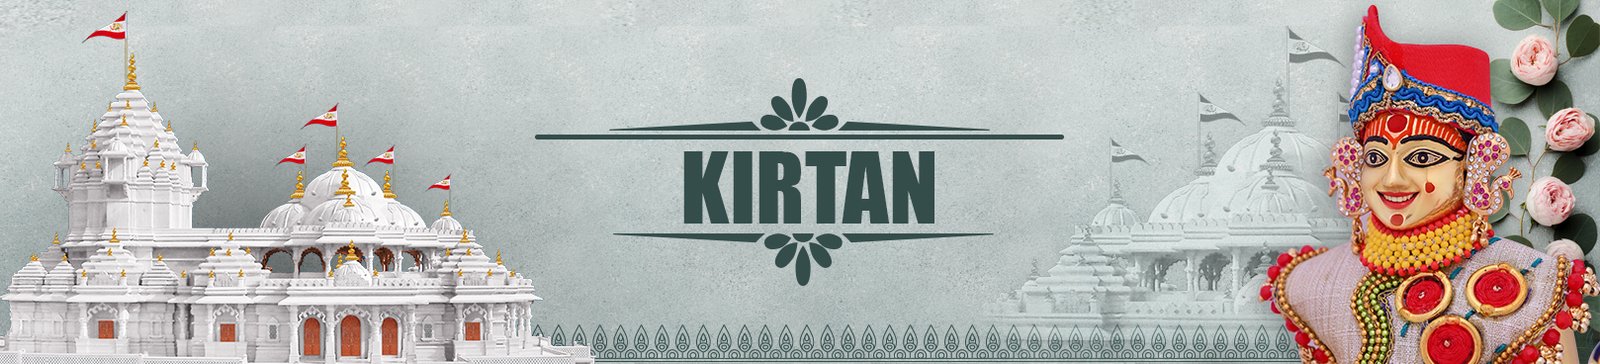 Kirtan